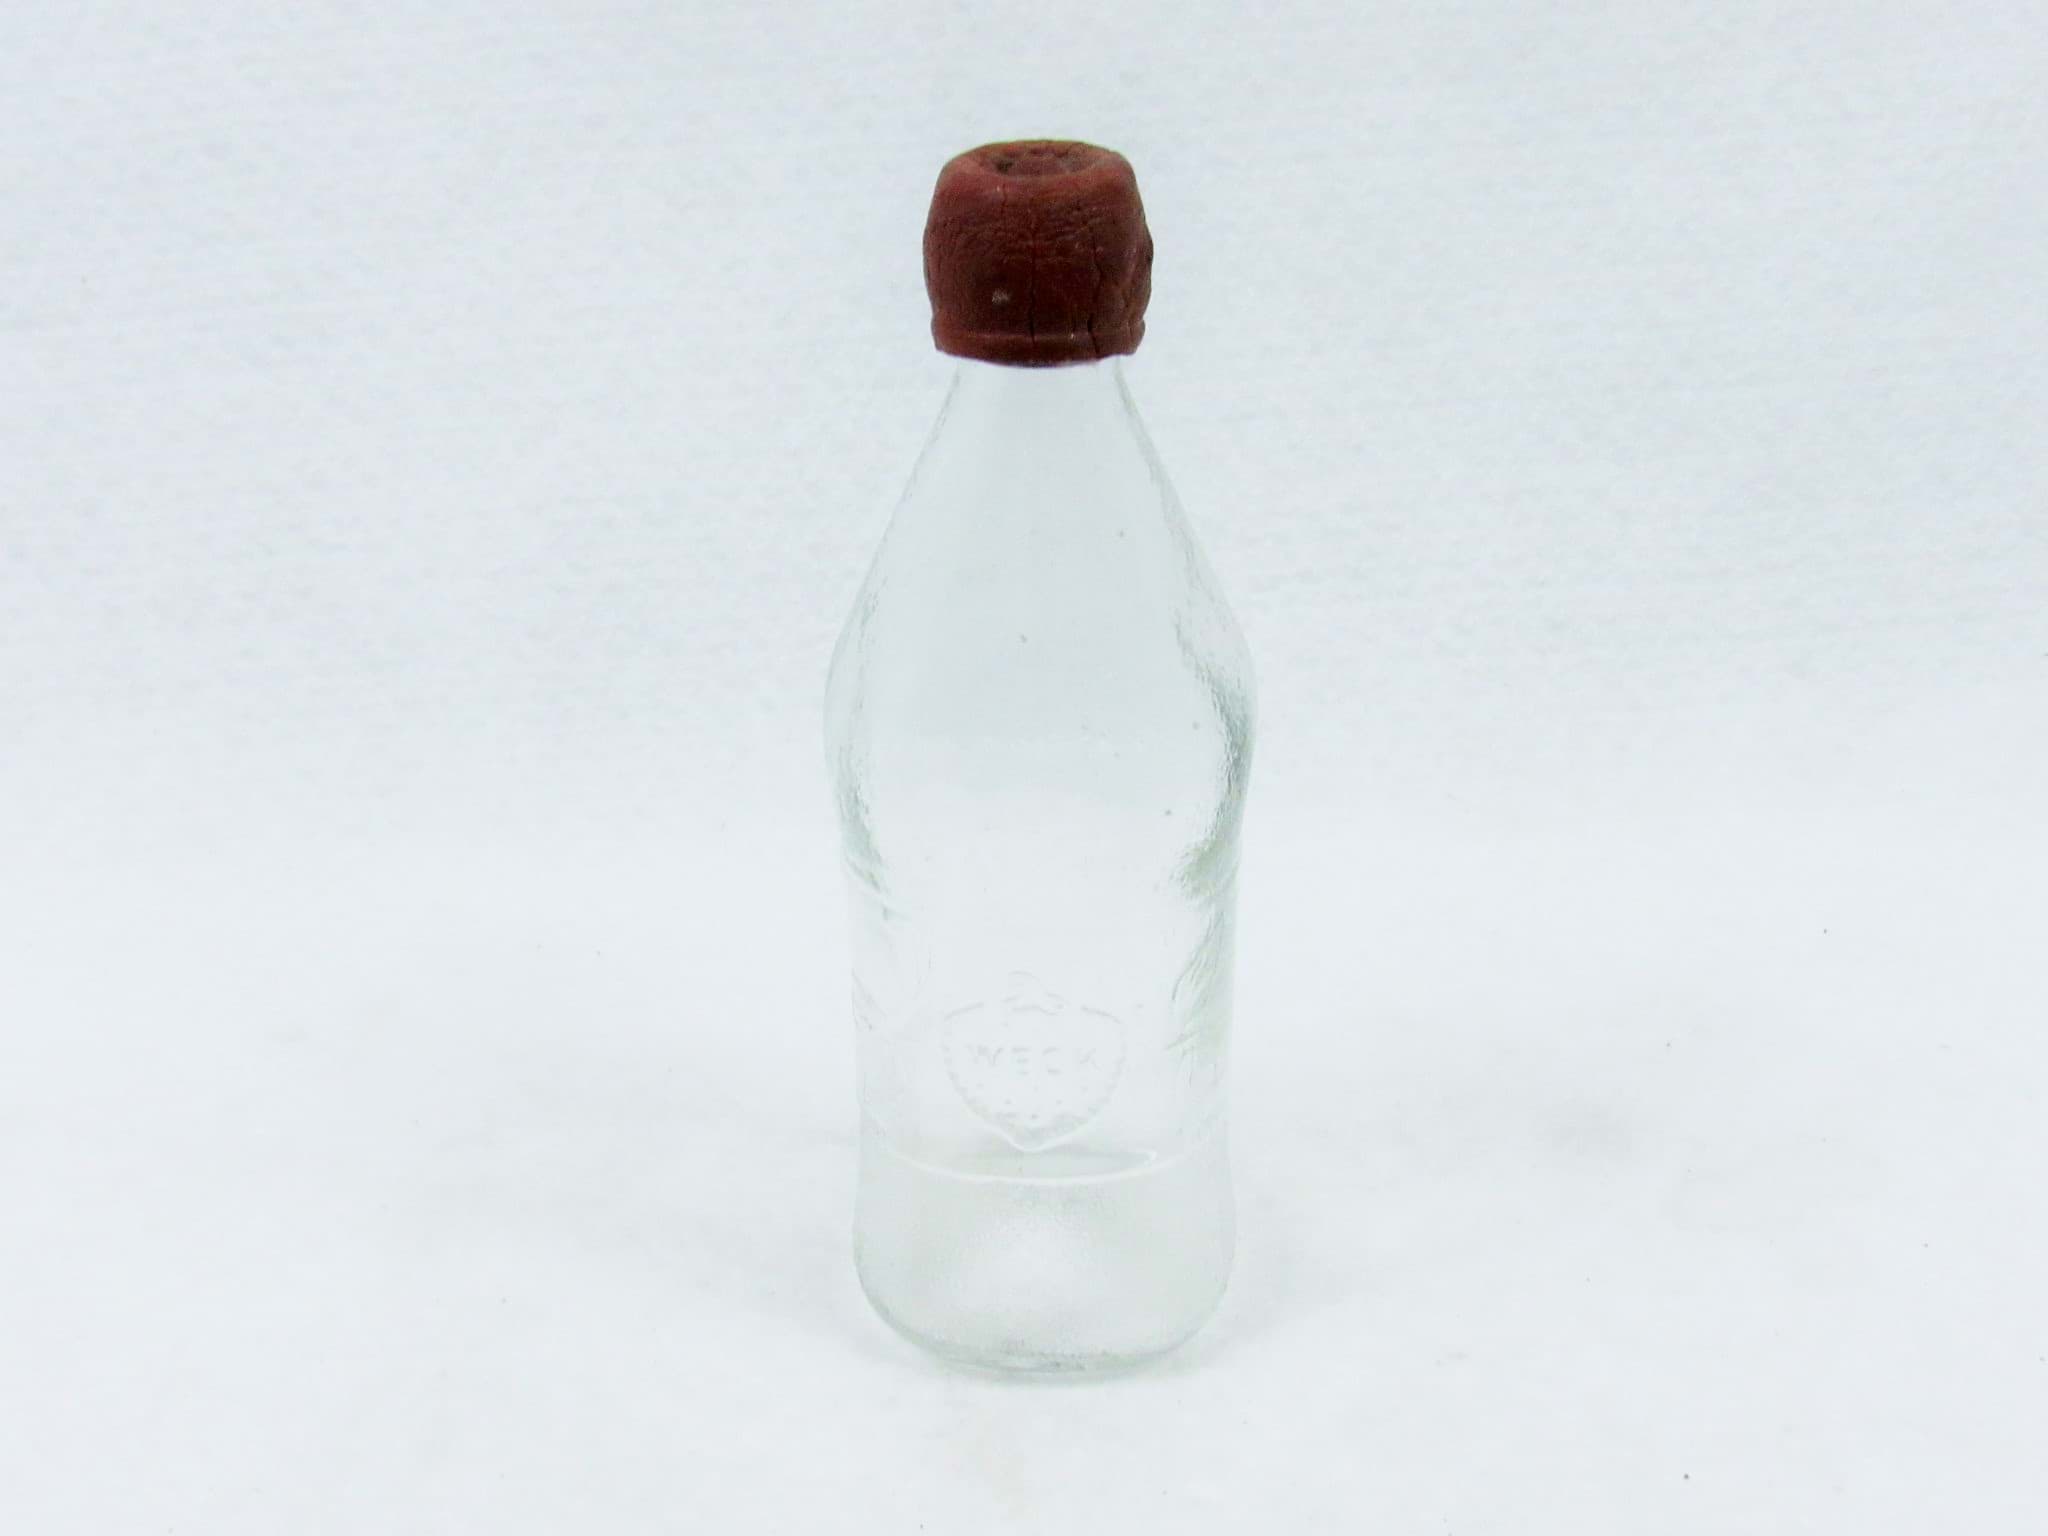 Obraz Alte Weck Flasche / Saftflasche aus Glas, Sammlerstück - Dekoration